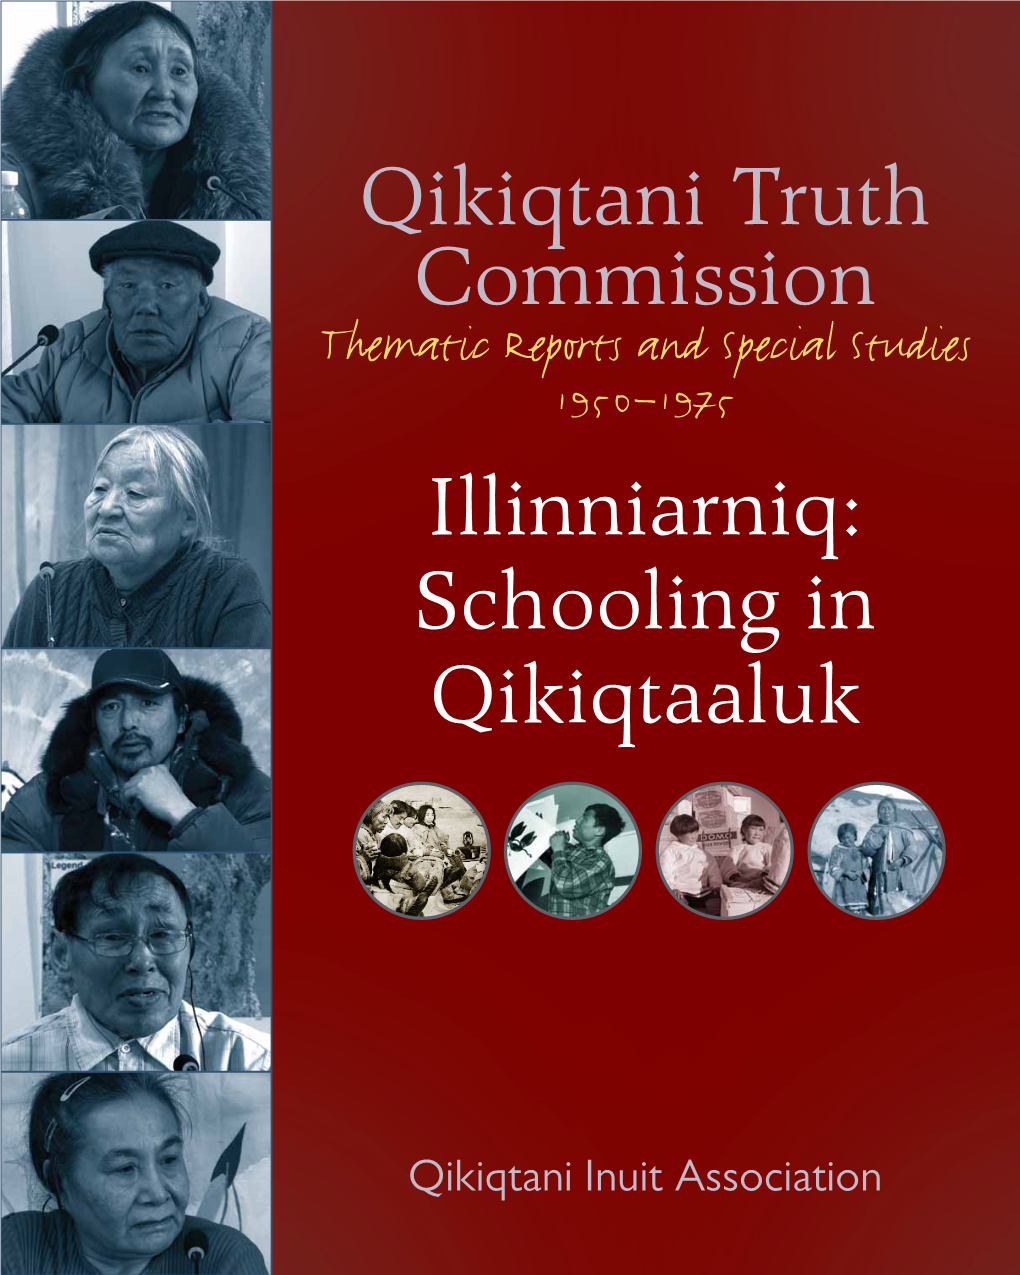 Qikiqtani Truth Commission Illinniarniq: Schooling in Qikiqtaaluk